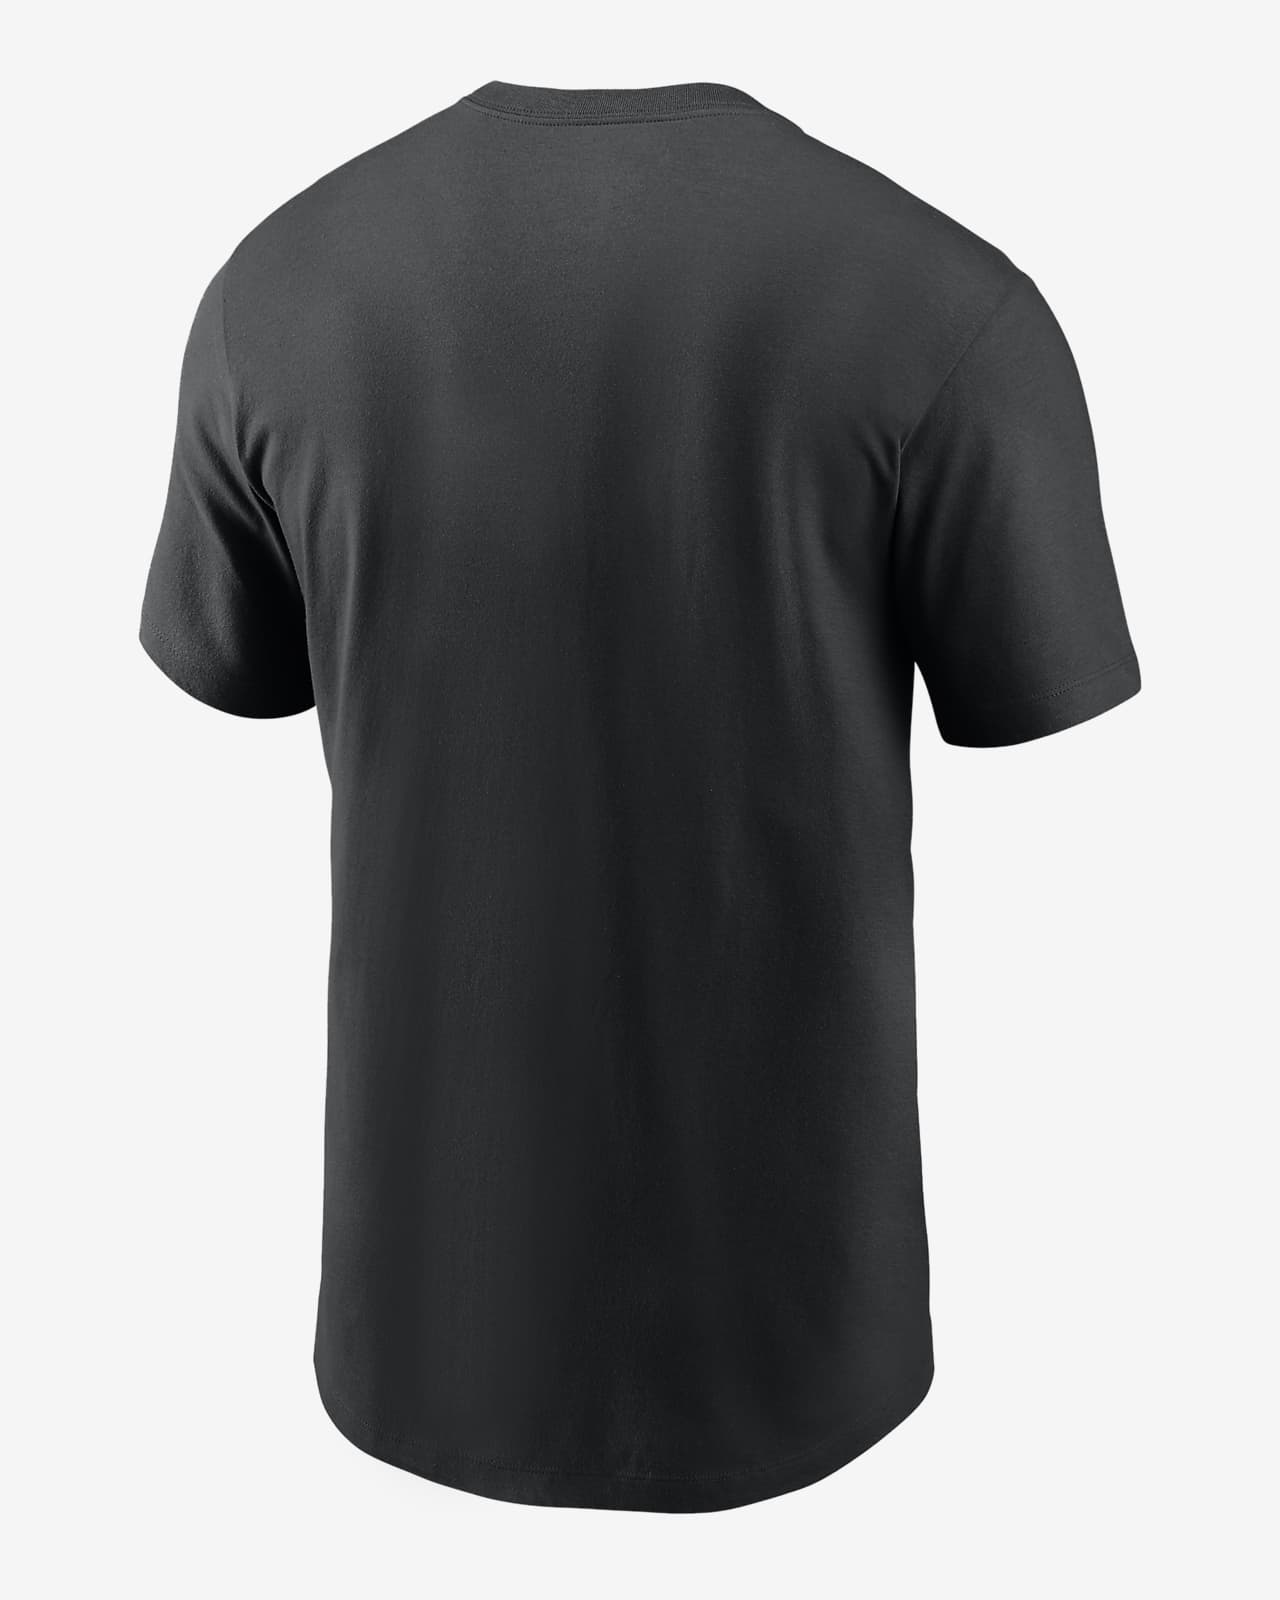 Baltimore Orioles Black T-Shirt - Unisex - 100% Cotton - S, M, L, XL